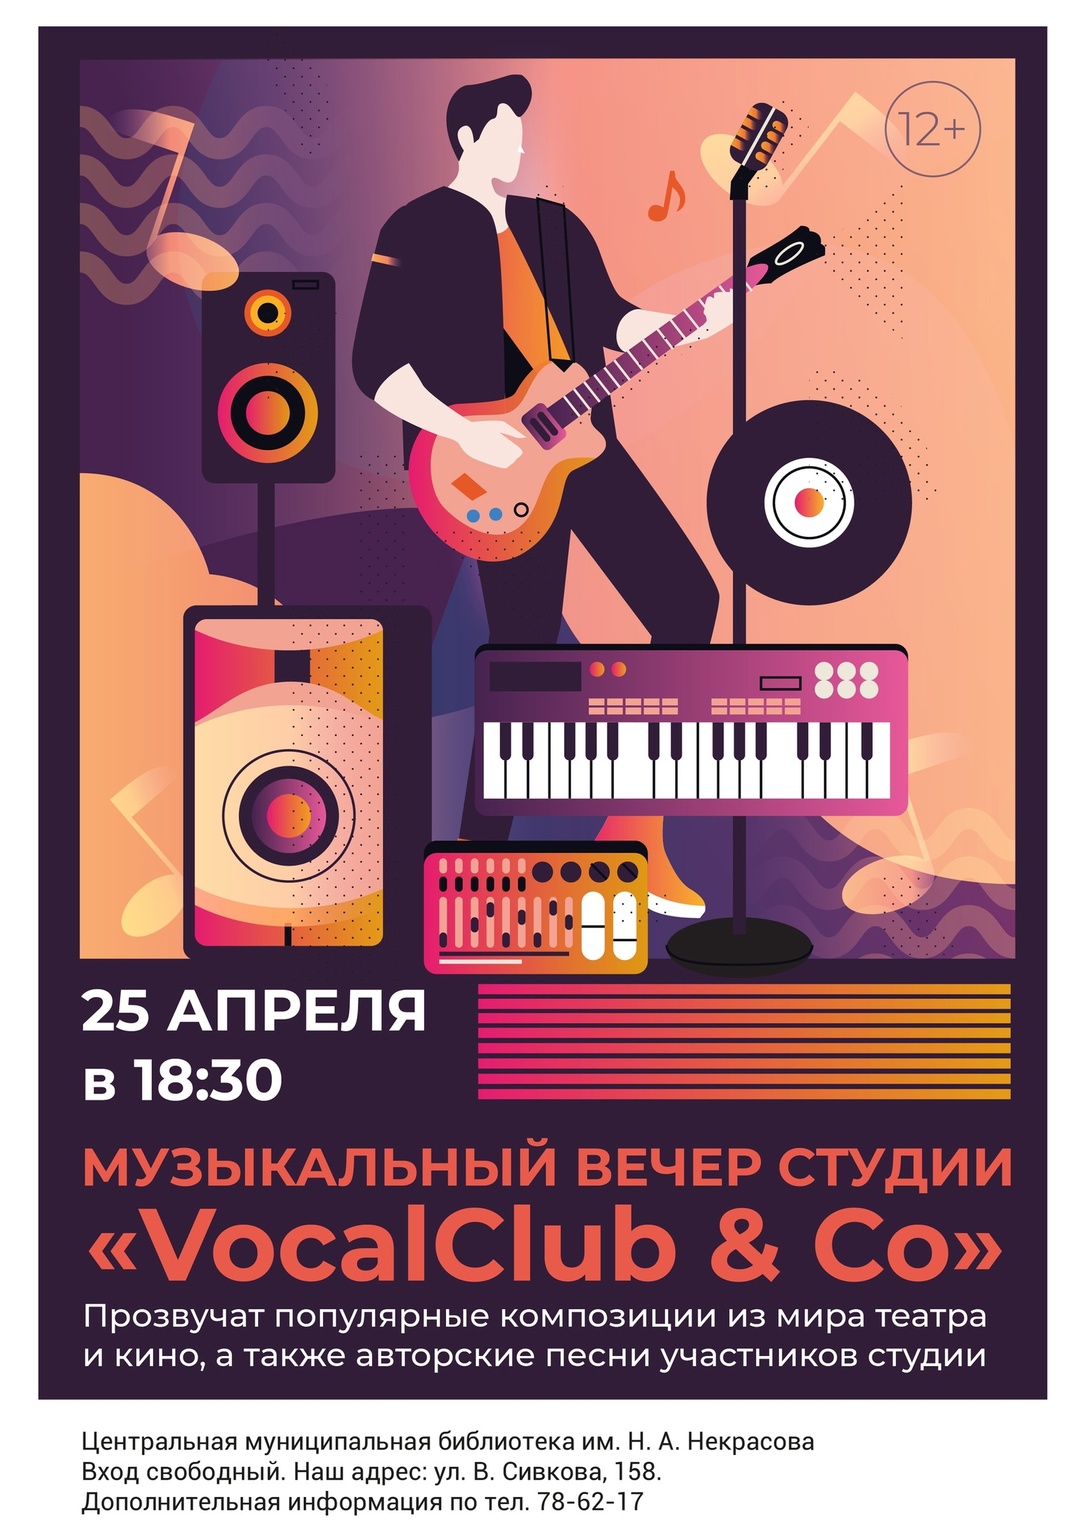 Музыкальный вечер «VocalClub & Co»